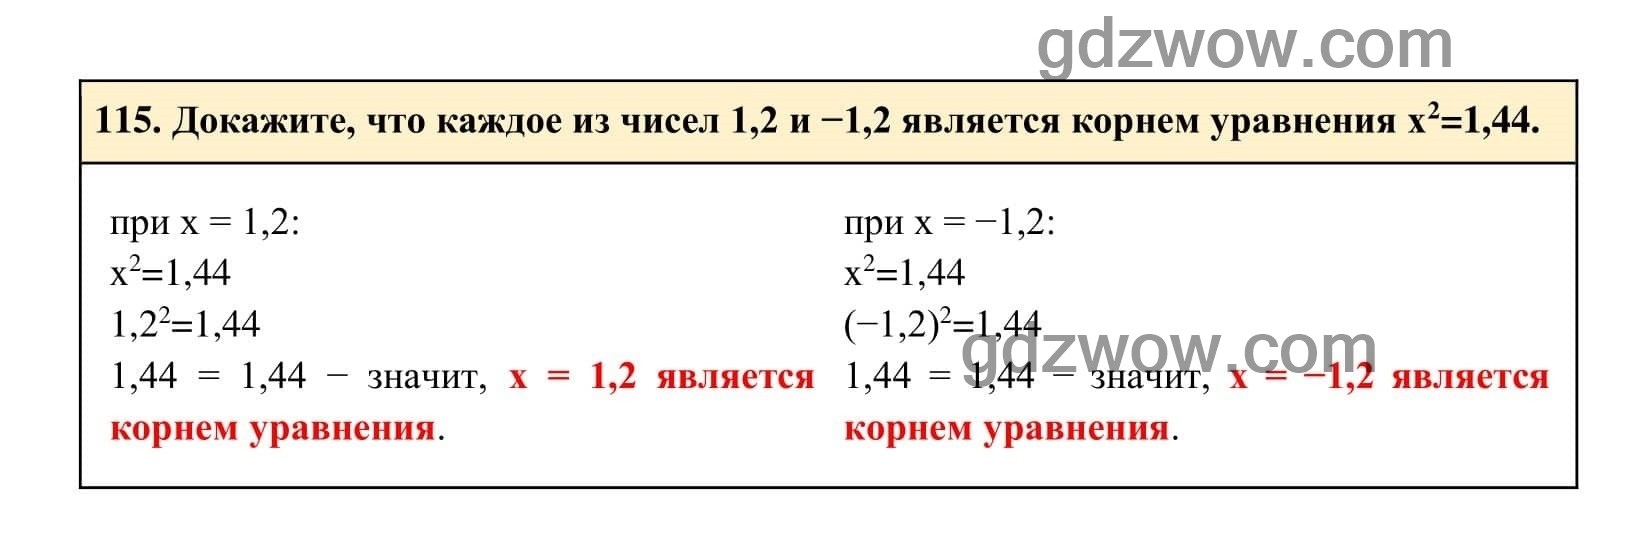 Упражнение 115 - ГДЗ по Алгебре 7 класс Учебник Макарычев (решебник) - GDZwow